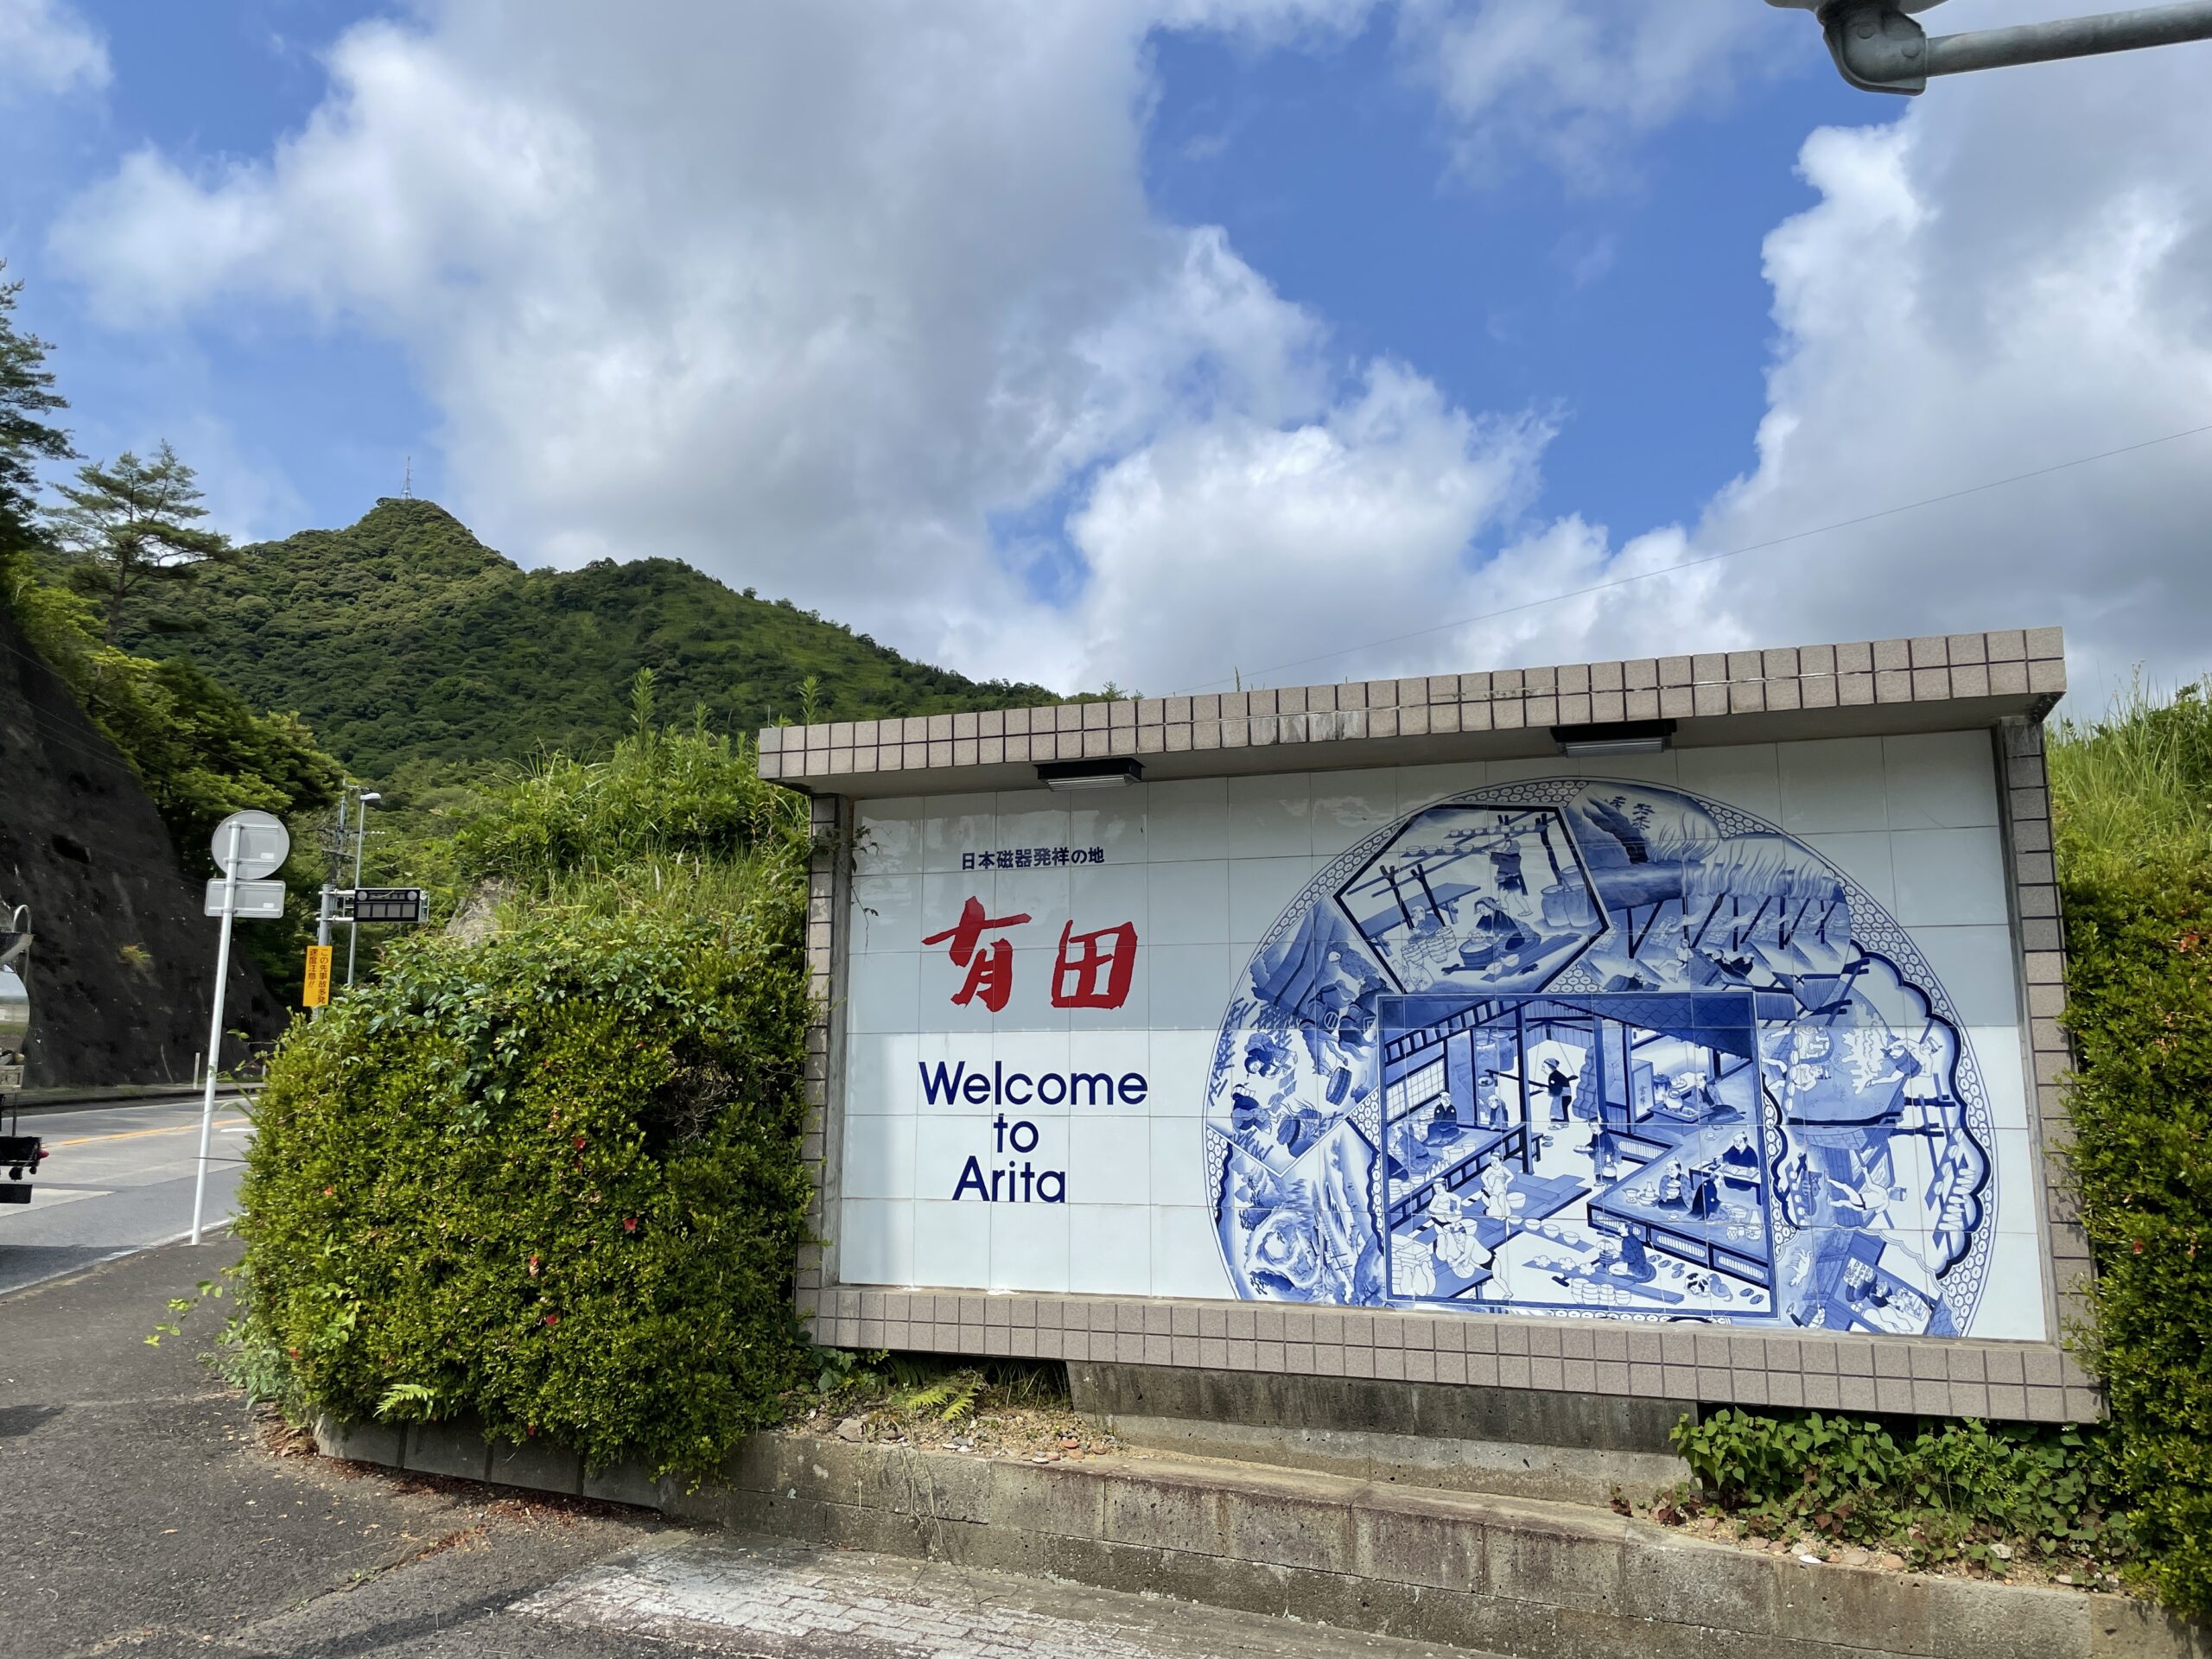 Otrseingangsschild - Willkommen in Arita, Ursprung des Porzellans (in Japan)